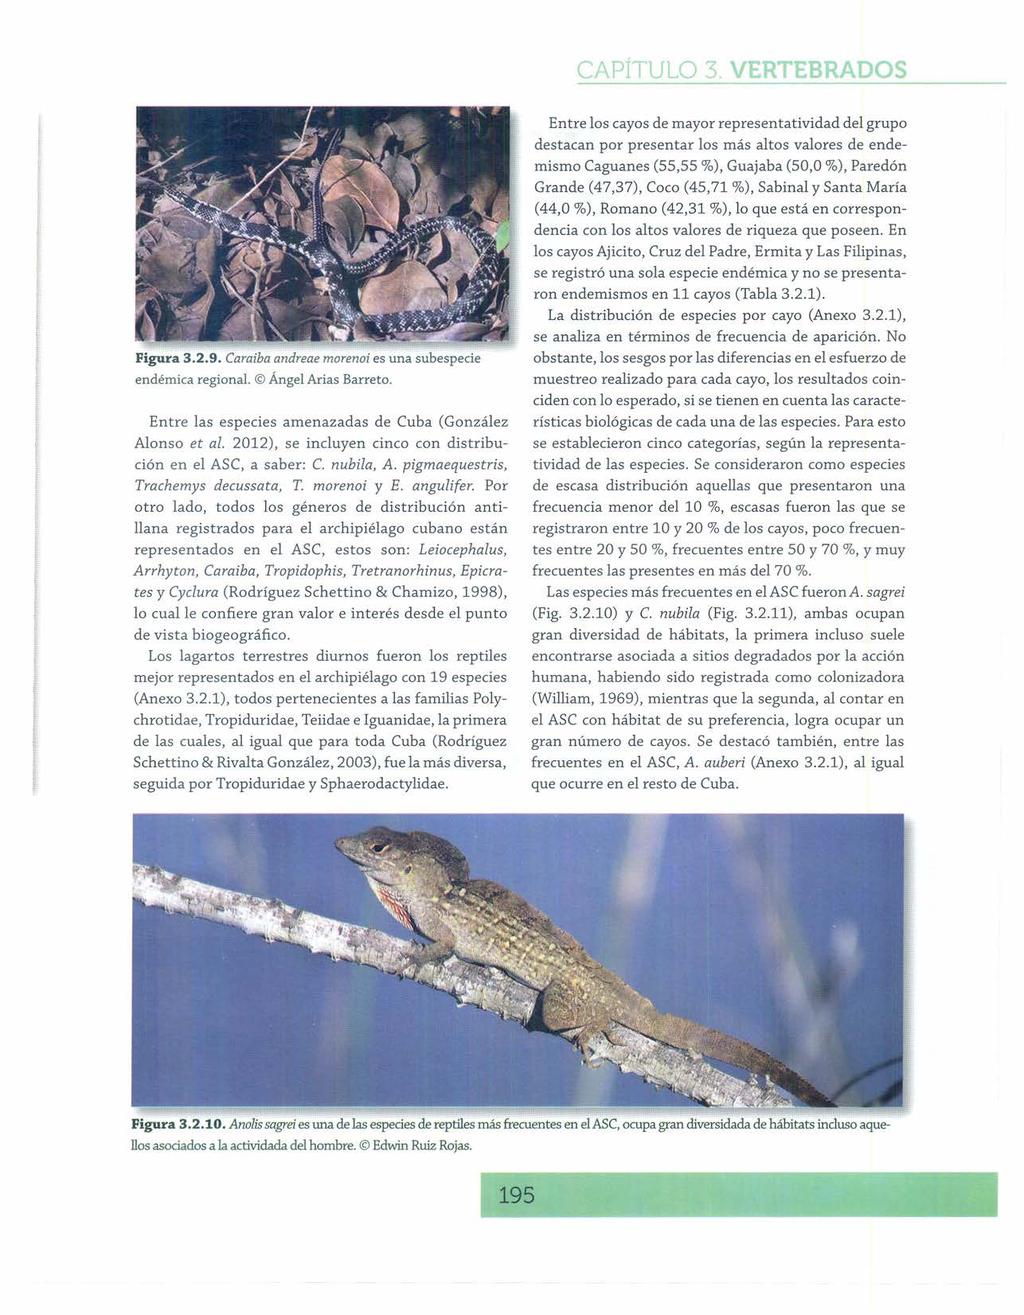 Figura 3.2.9. Caraiba andreae morenoi es una subespecie endémicaregional. ÁngelAriasBarreta. Entre las especies amenazadas de Cuba (González Alonso et al.